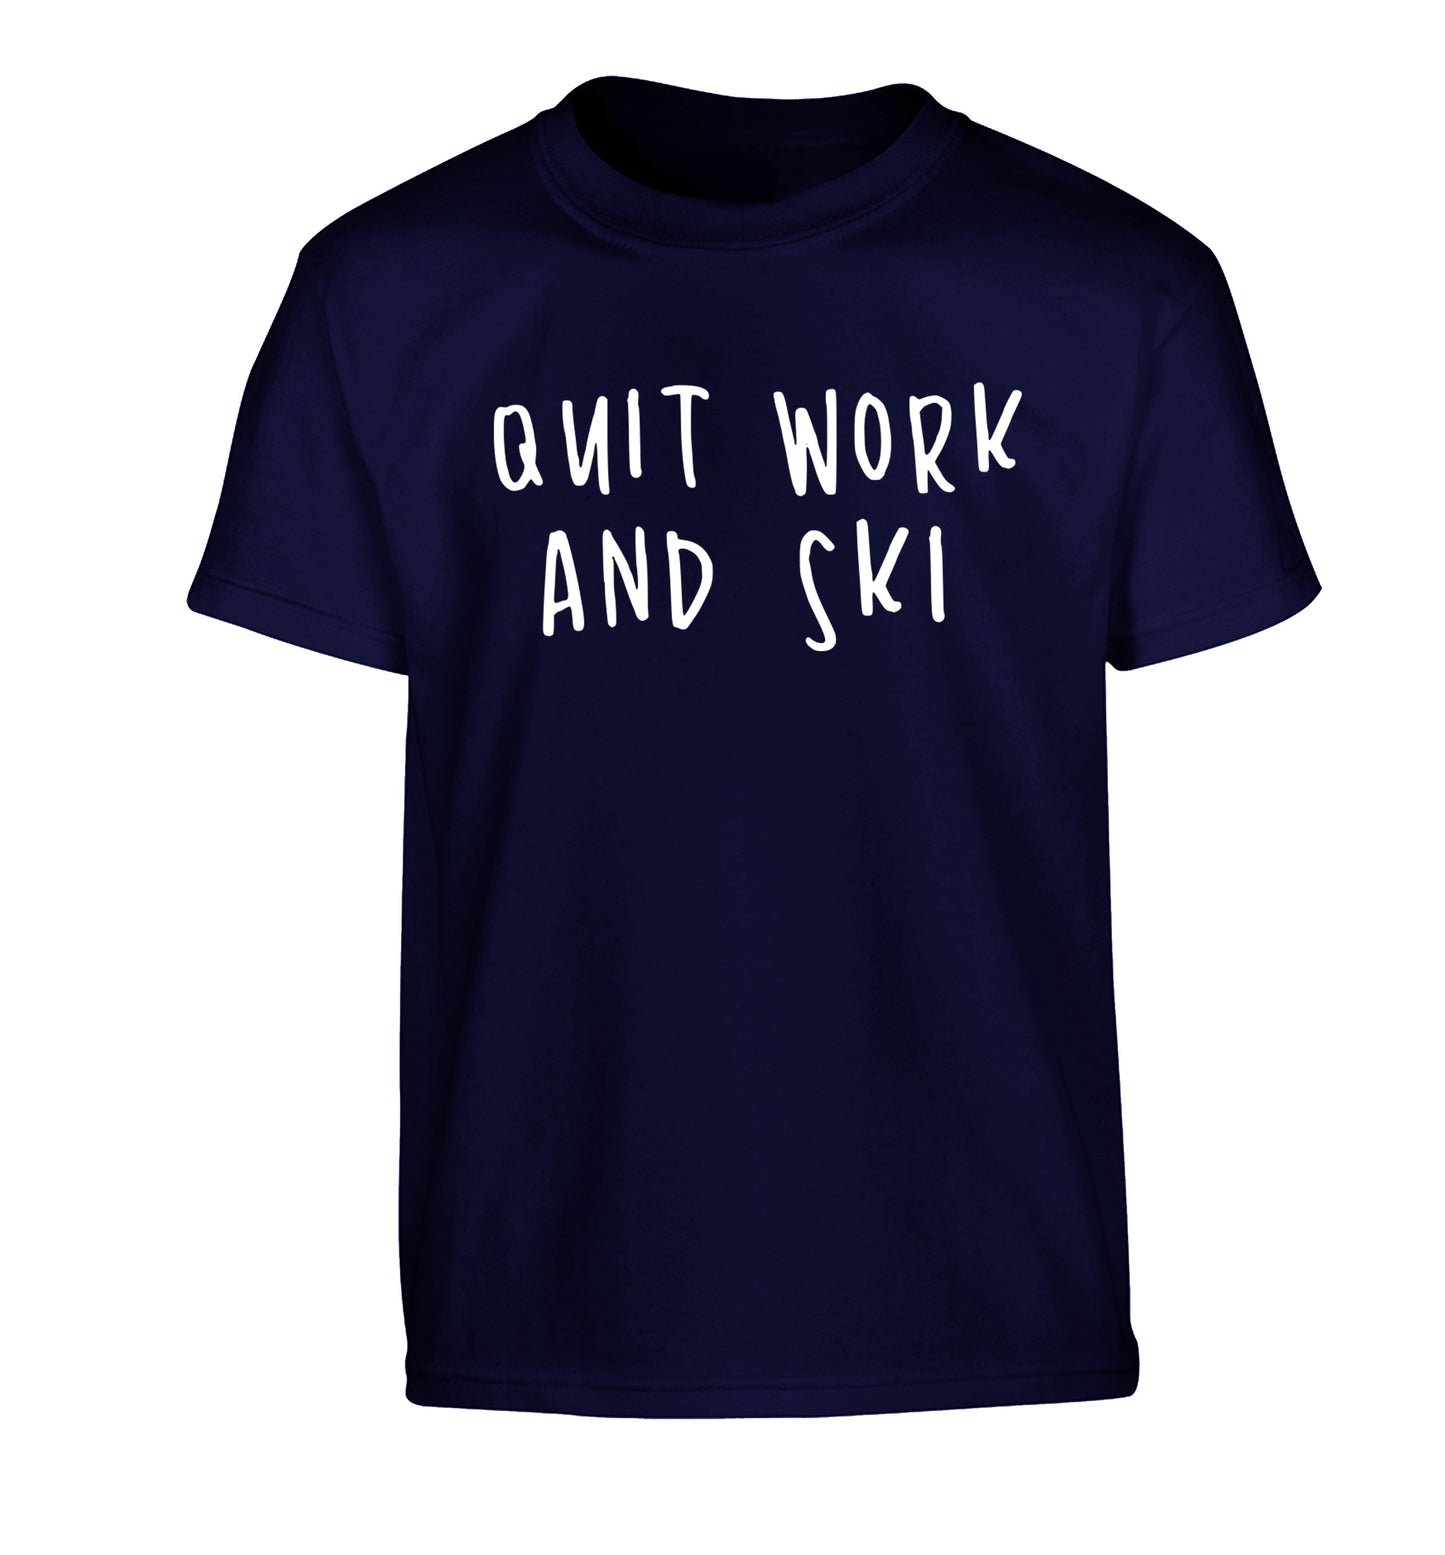 Quit work and ski Children's navy Tshirt 12-14 Years